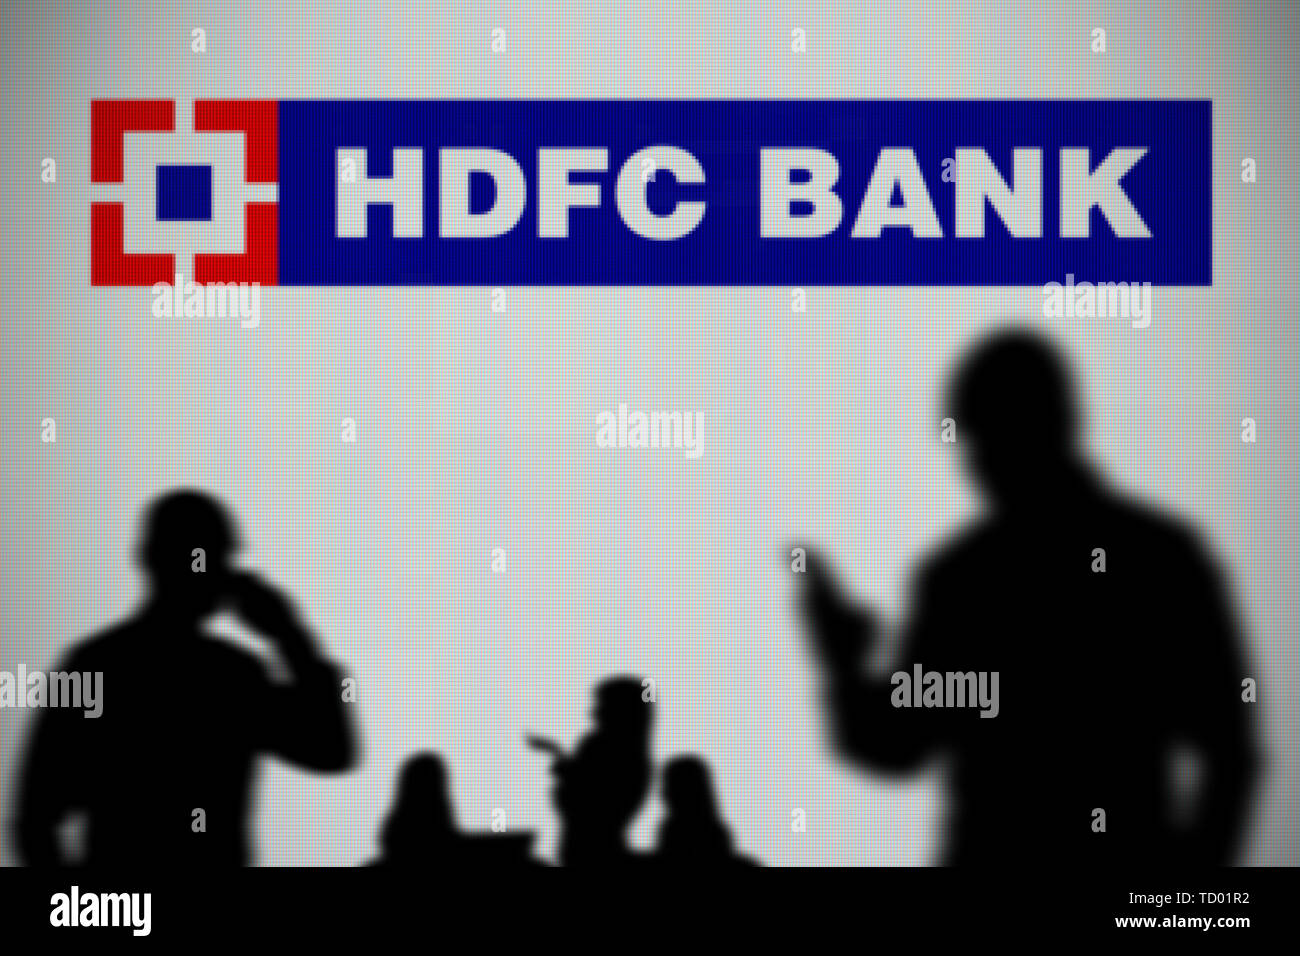 El HDFC Bank logo es visto en una pantalla LED en el fondo mientras una silueta persona utiliza un smartphone en primer plano (uso Editorial solamente) Foto de stock